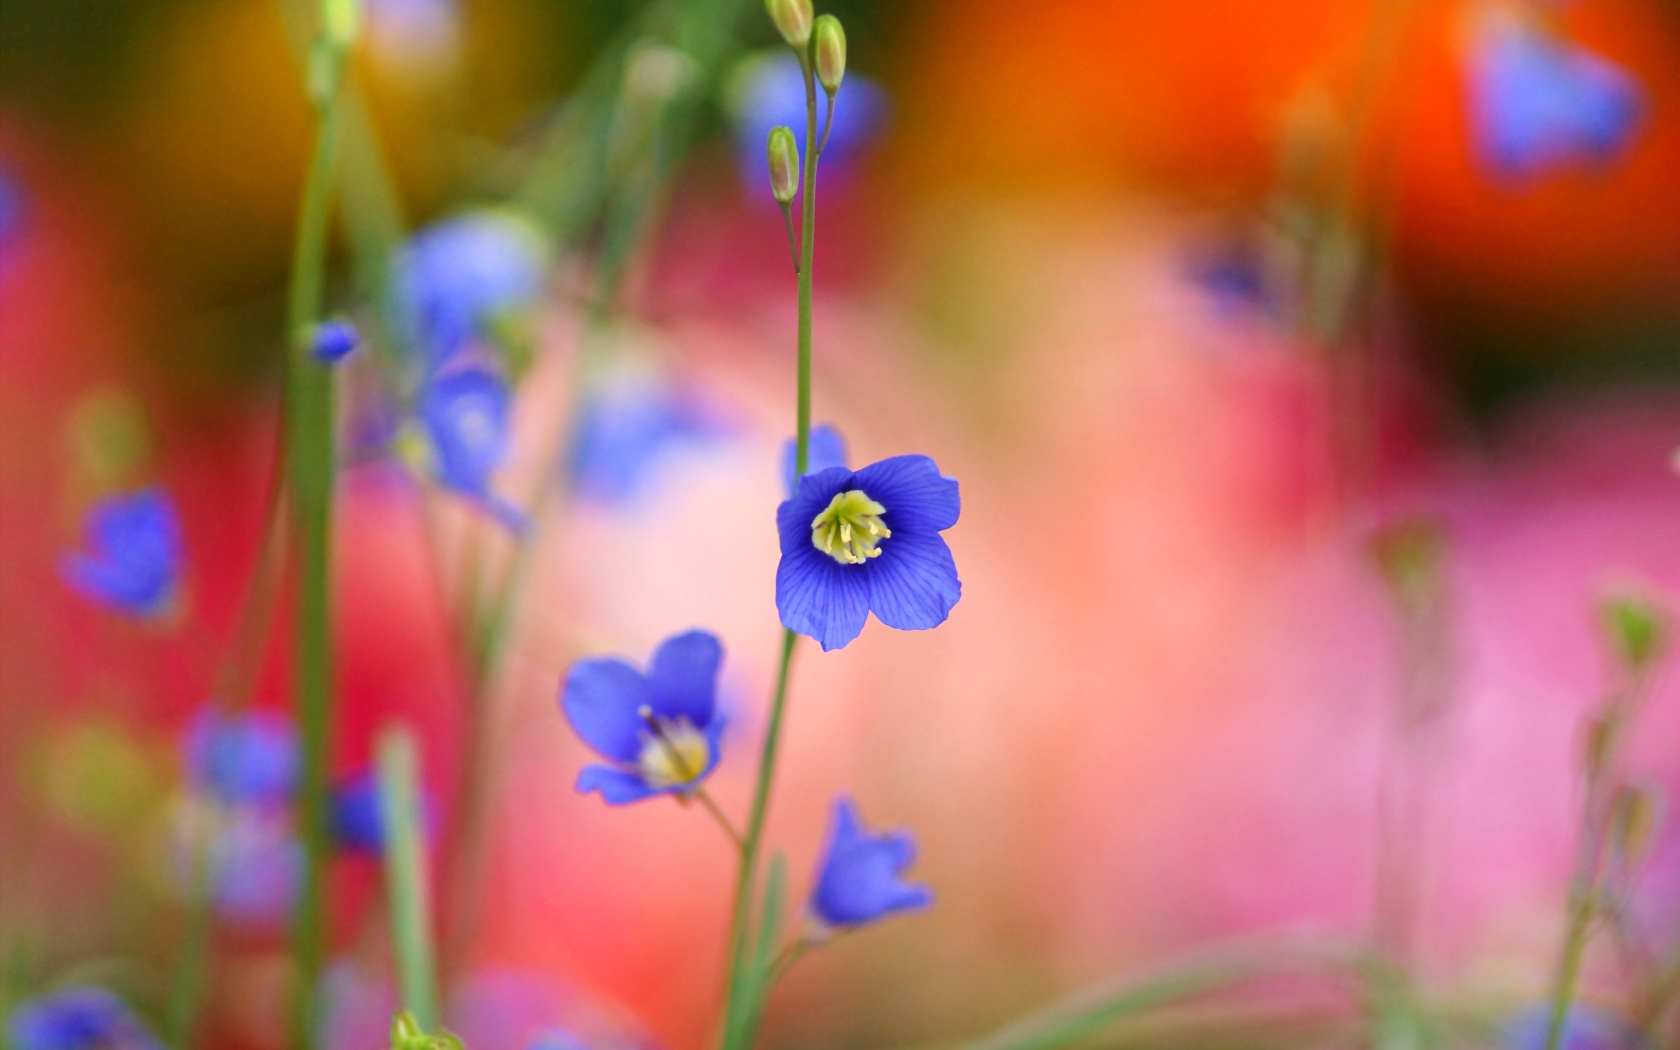 Sfondi Blurred flowers 1680x1050